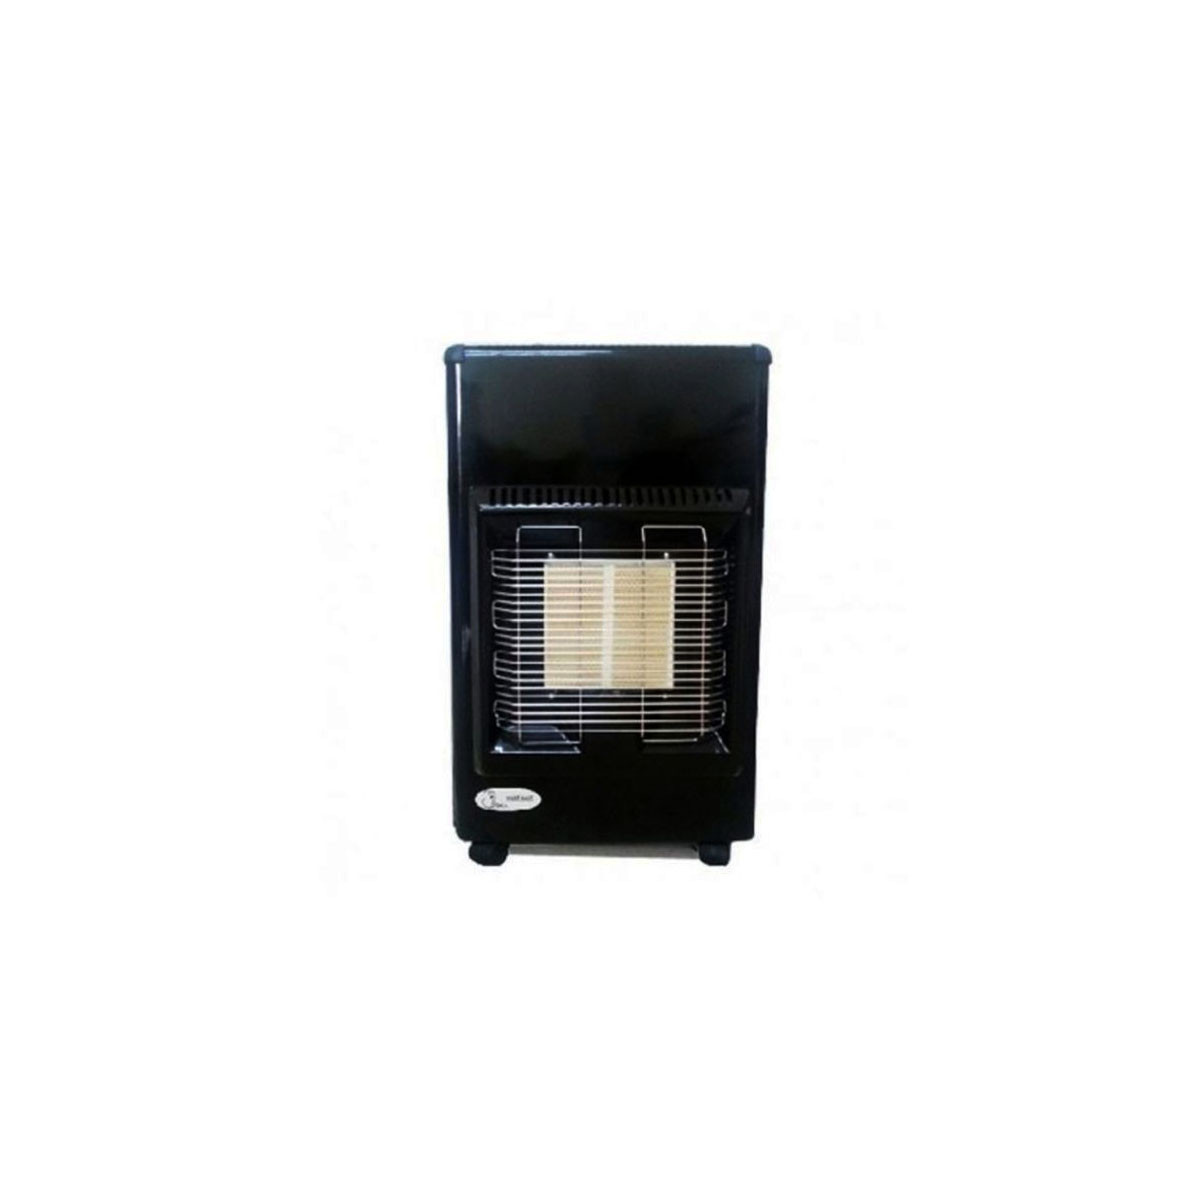 Kit de thermocouple pour cuisinière à gaz équipement de protection de  chauffage sonde de détection de température (1500 m) - Cdiscount Auto